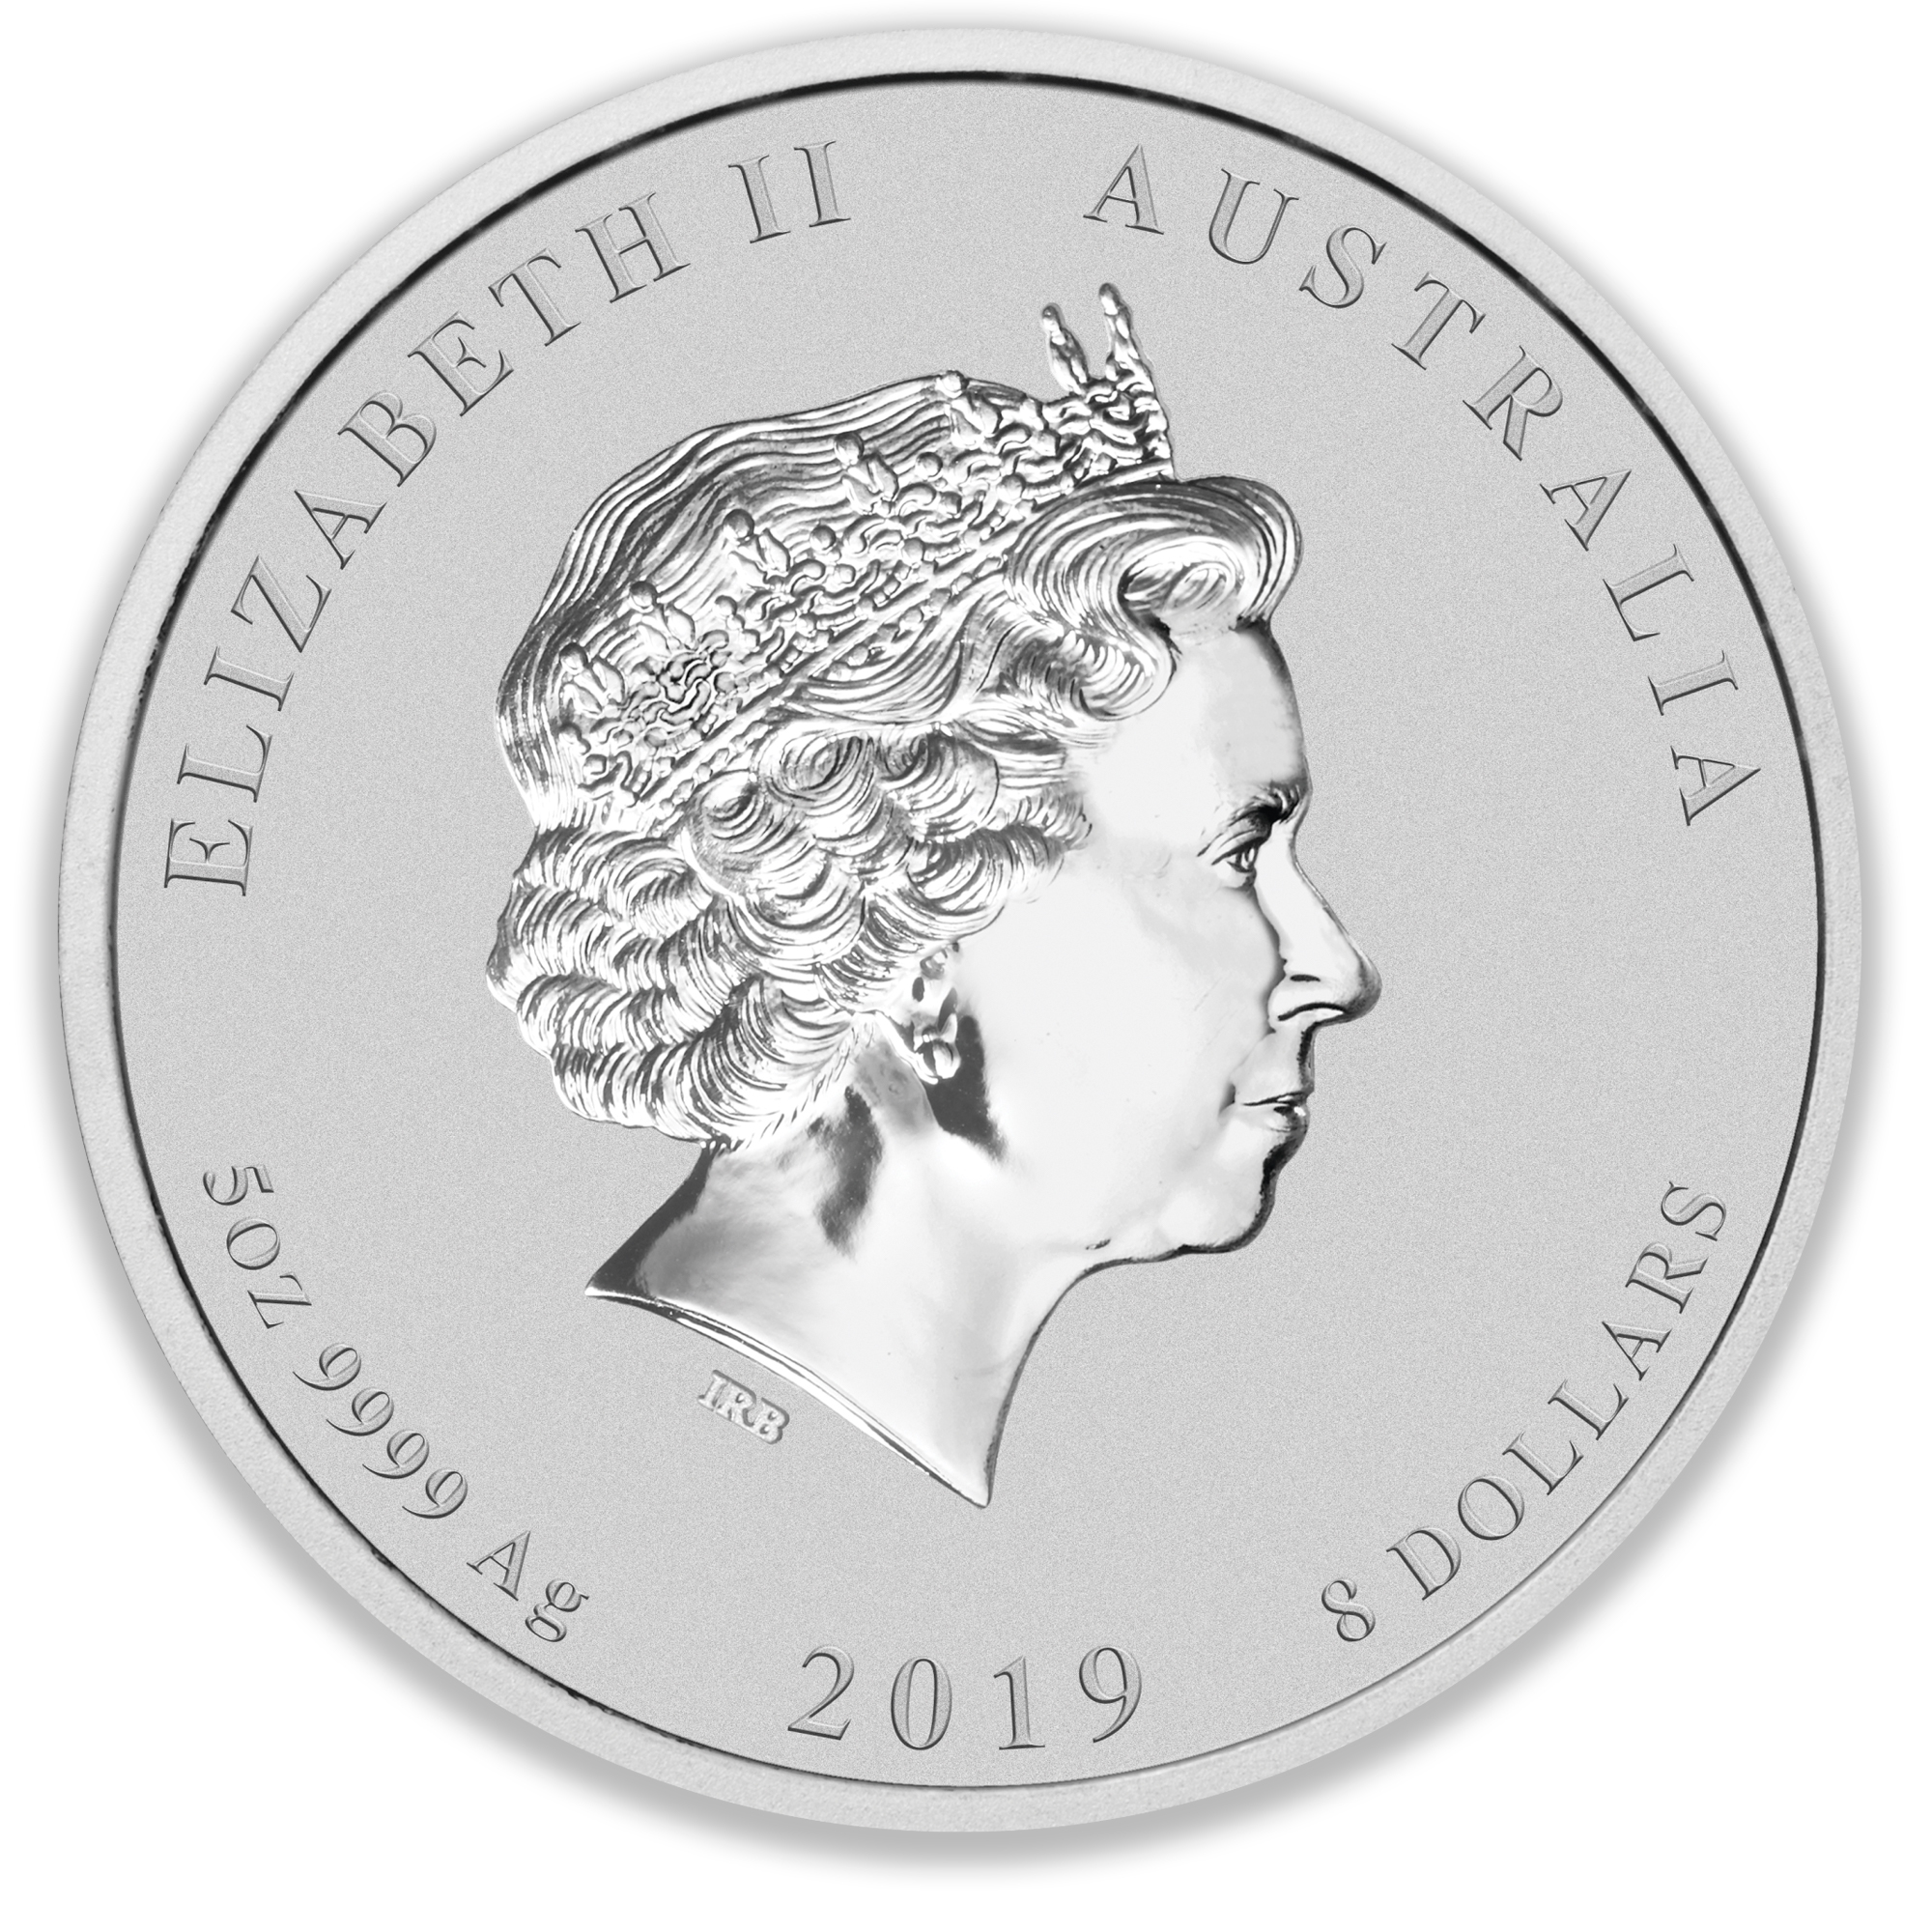 2019 5oz Perth Mint Silver Lunar Pig Coin